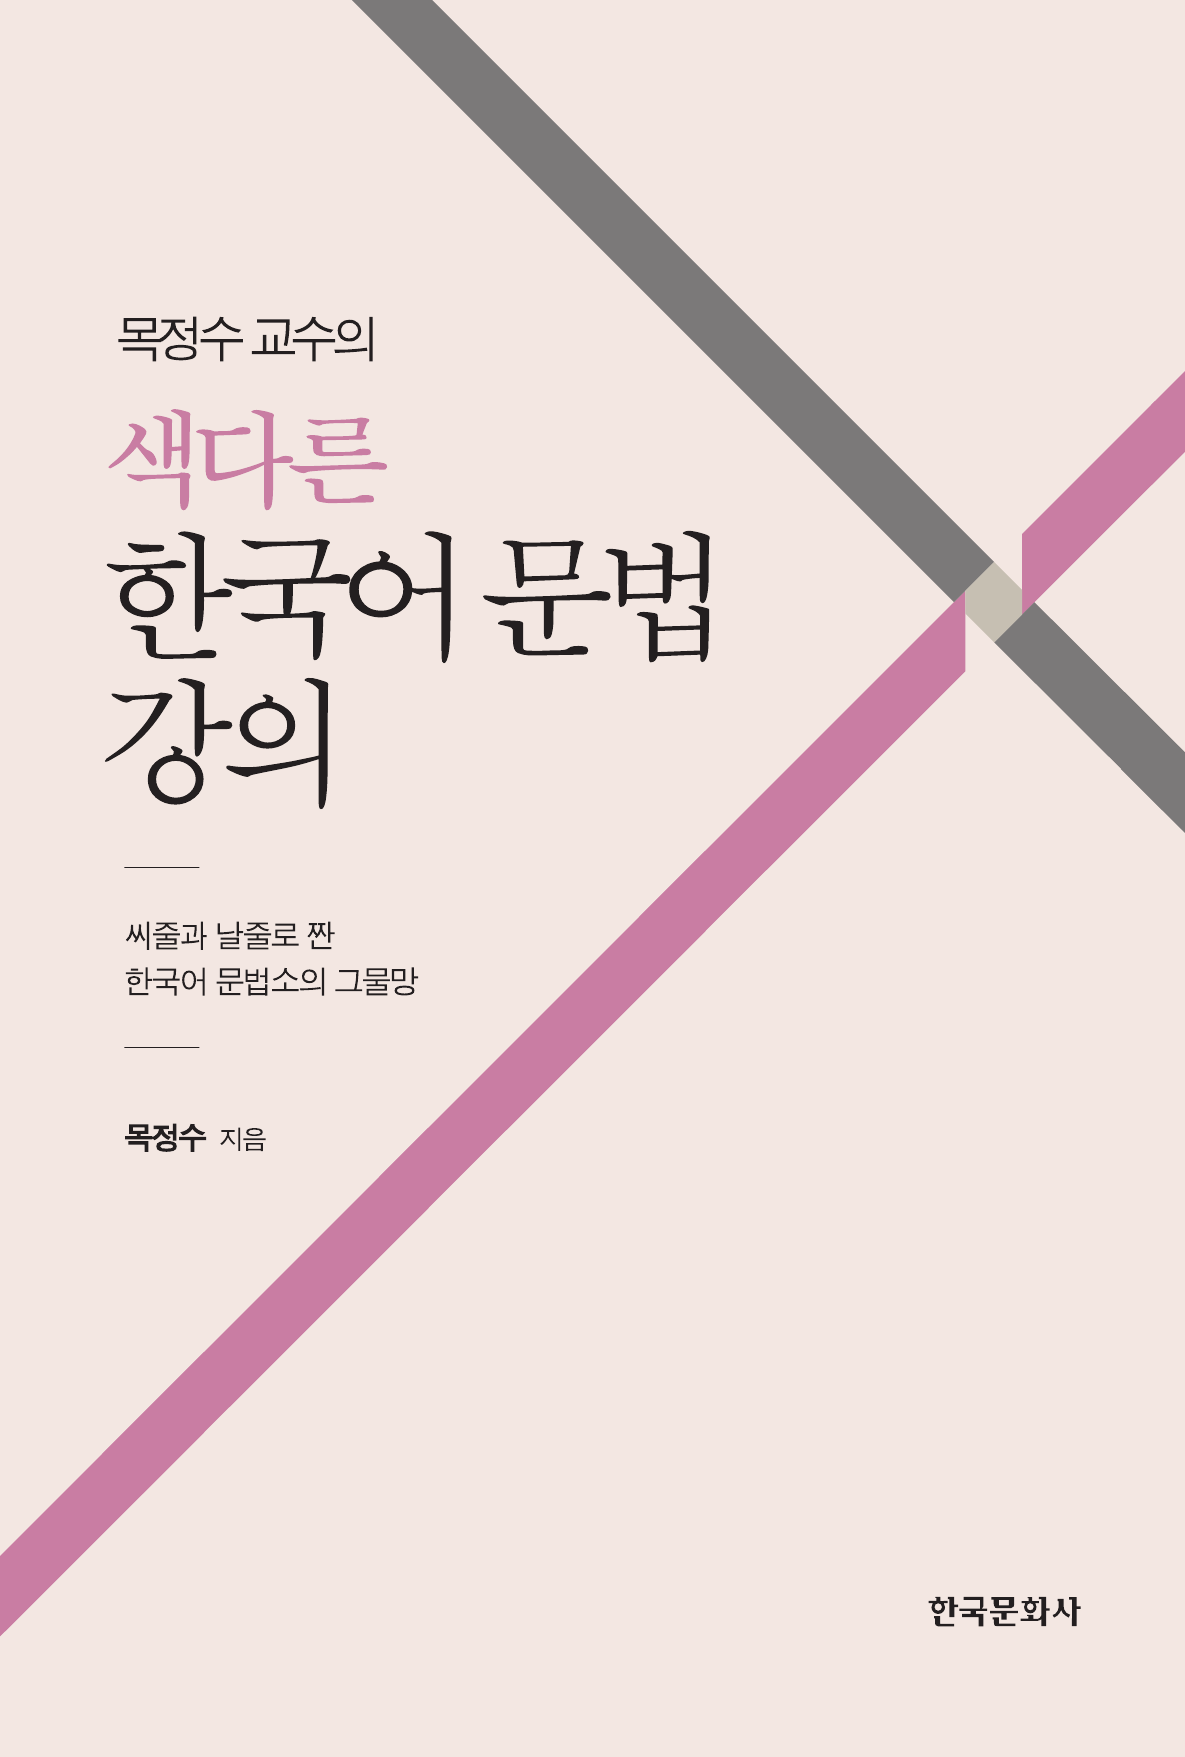 목정수 교수의 색다른 한국어 문법 강의